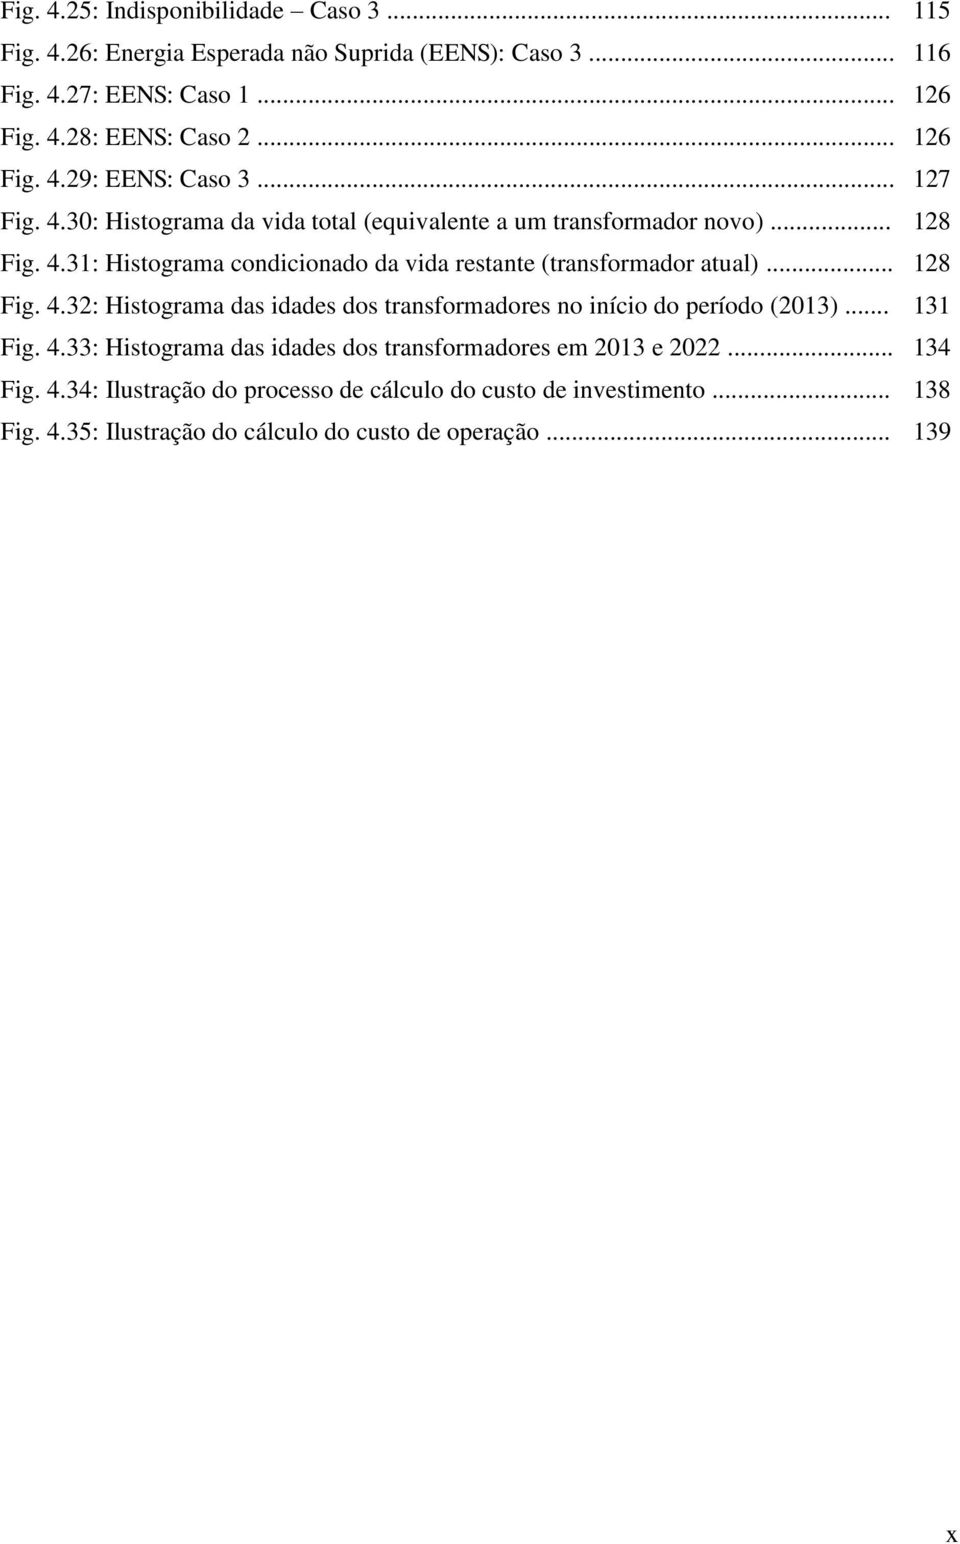 .. 128 Fig. 4.32: Histograma das idades dos transformadores no início do período (2013)... 131 Fig. 4.33: Histograma das idades dos transformadores em 2013 e 2022.